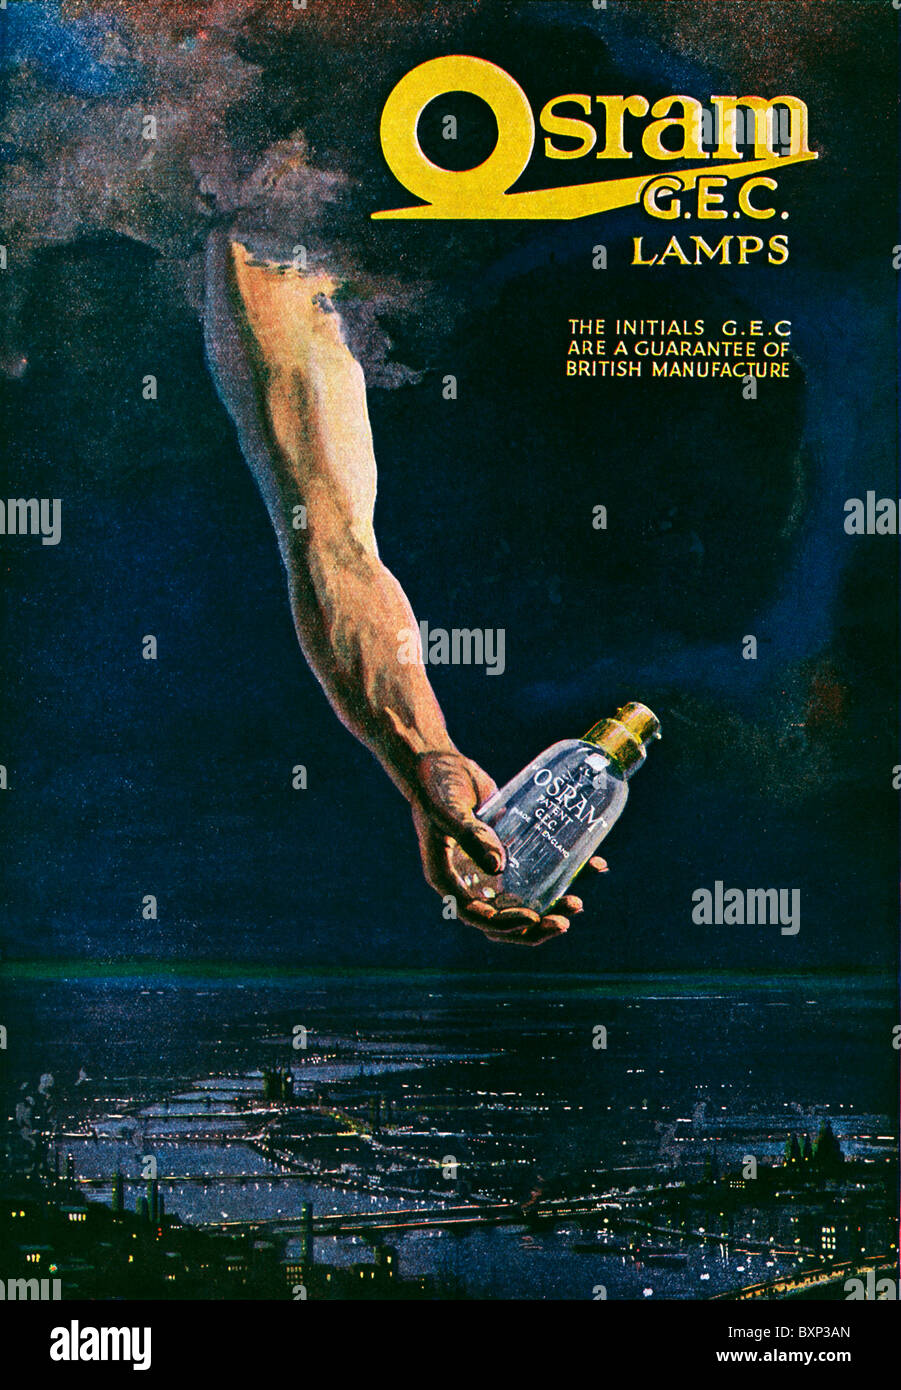 Osram GEC-Lampen, 1919 Werbung für die Glühbirnen, eine Hand vom Himmel hält man über London in der Nacht Stockfoto